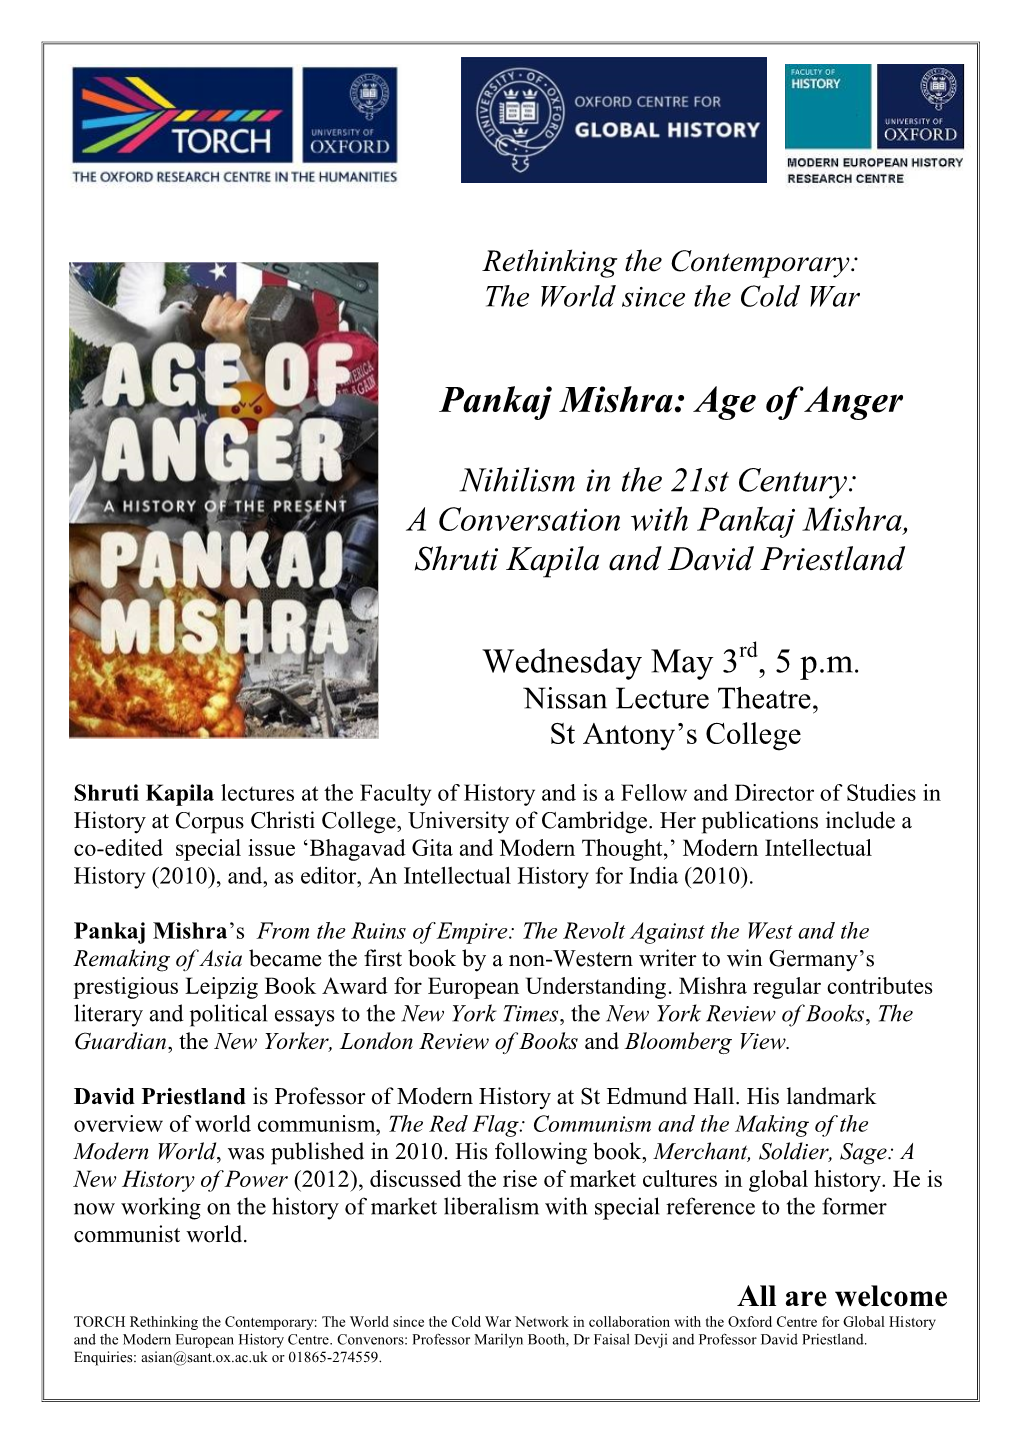 Pankaj Mishra: Age of Anger